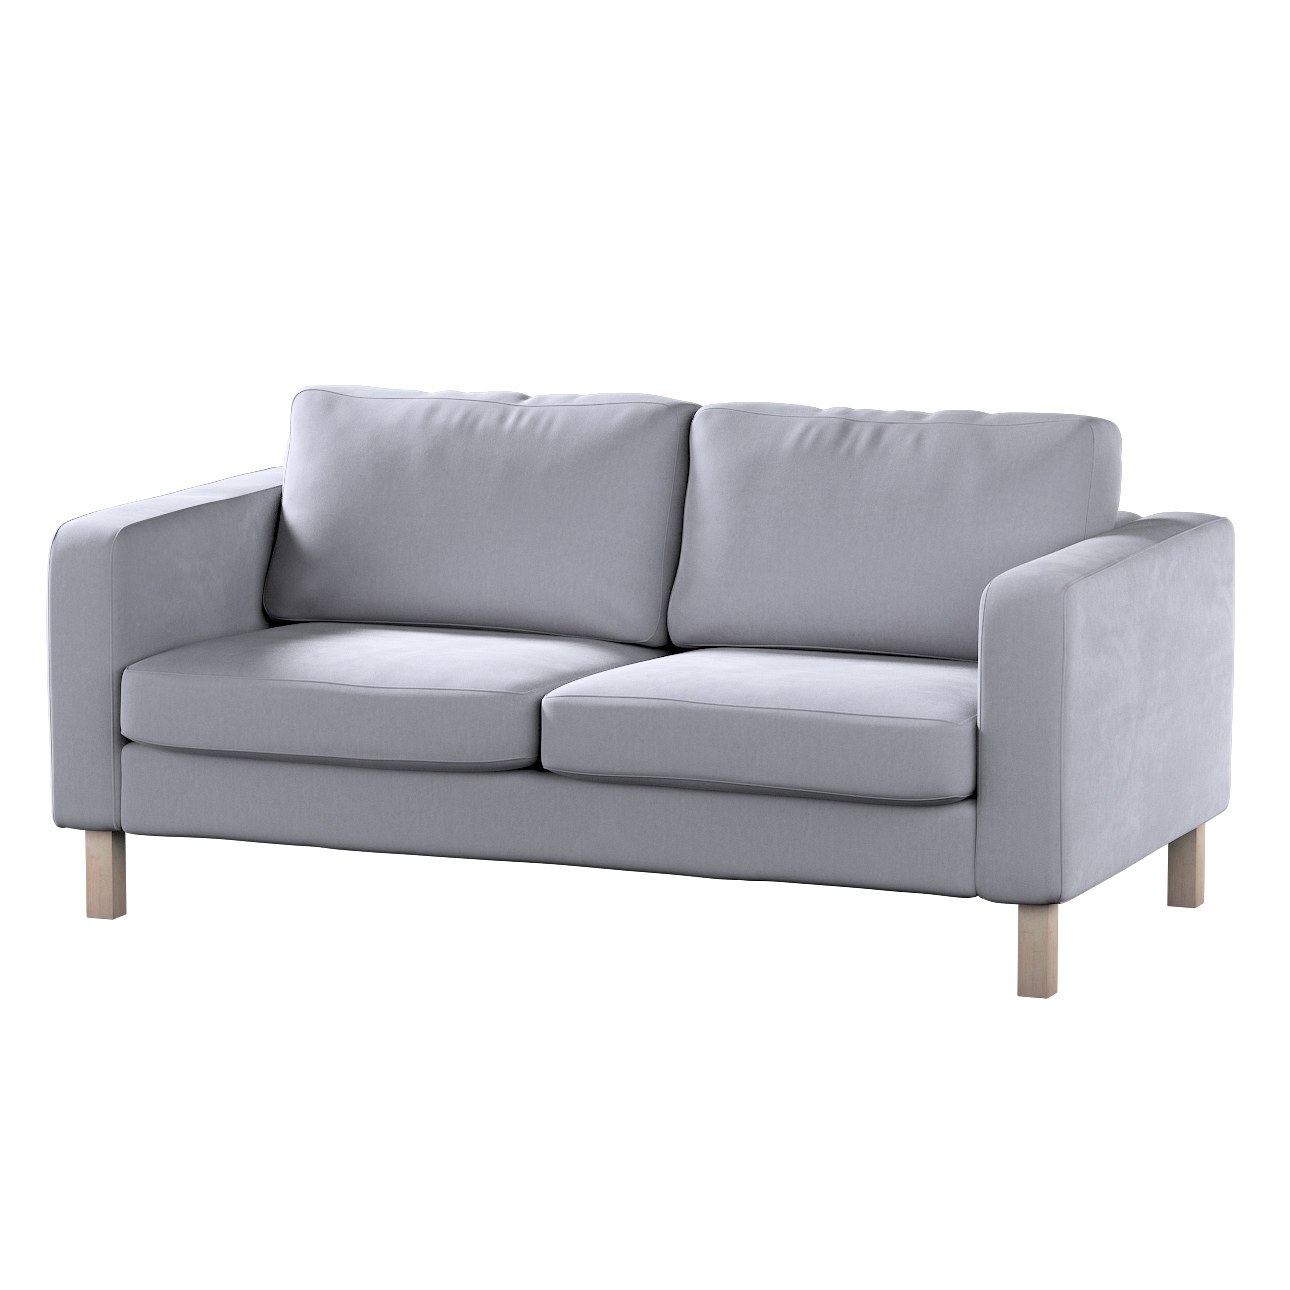 Bezug für Karlstad 2-Sitzer Sofa nicht ausklappbar, grau, Sofahusse, Karlst günstig online kaufen